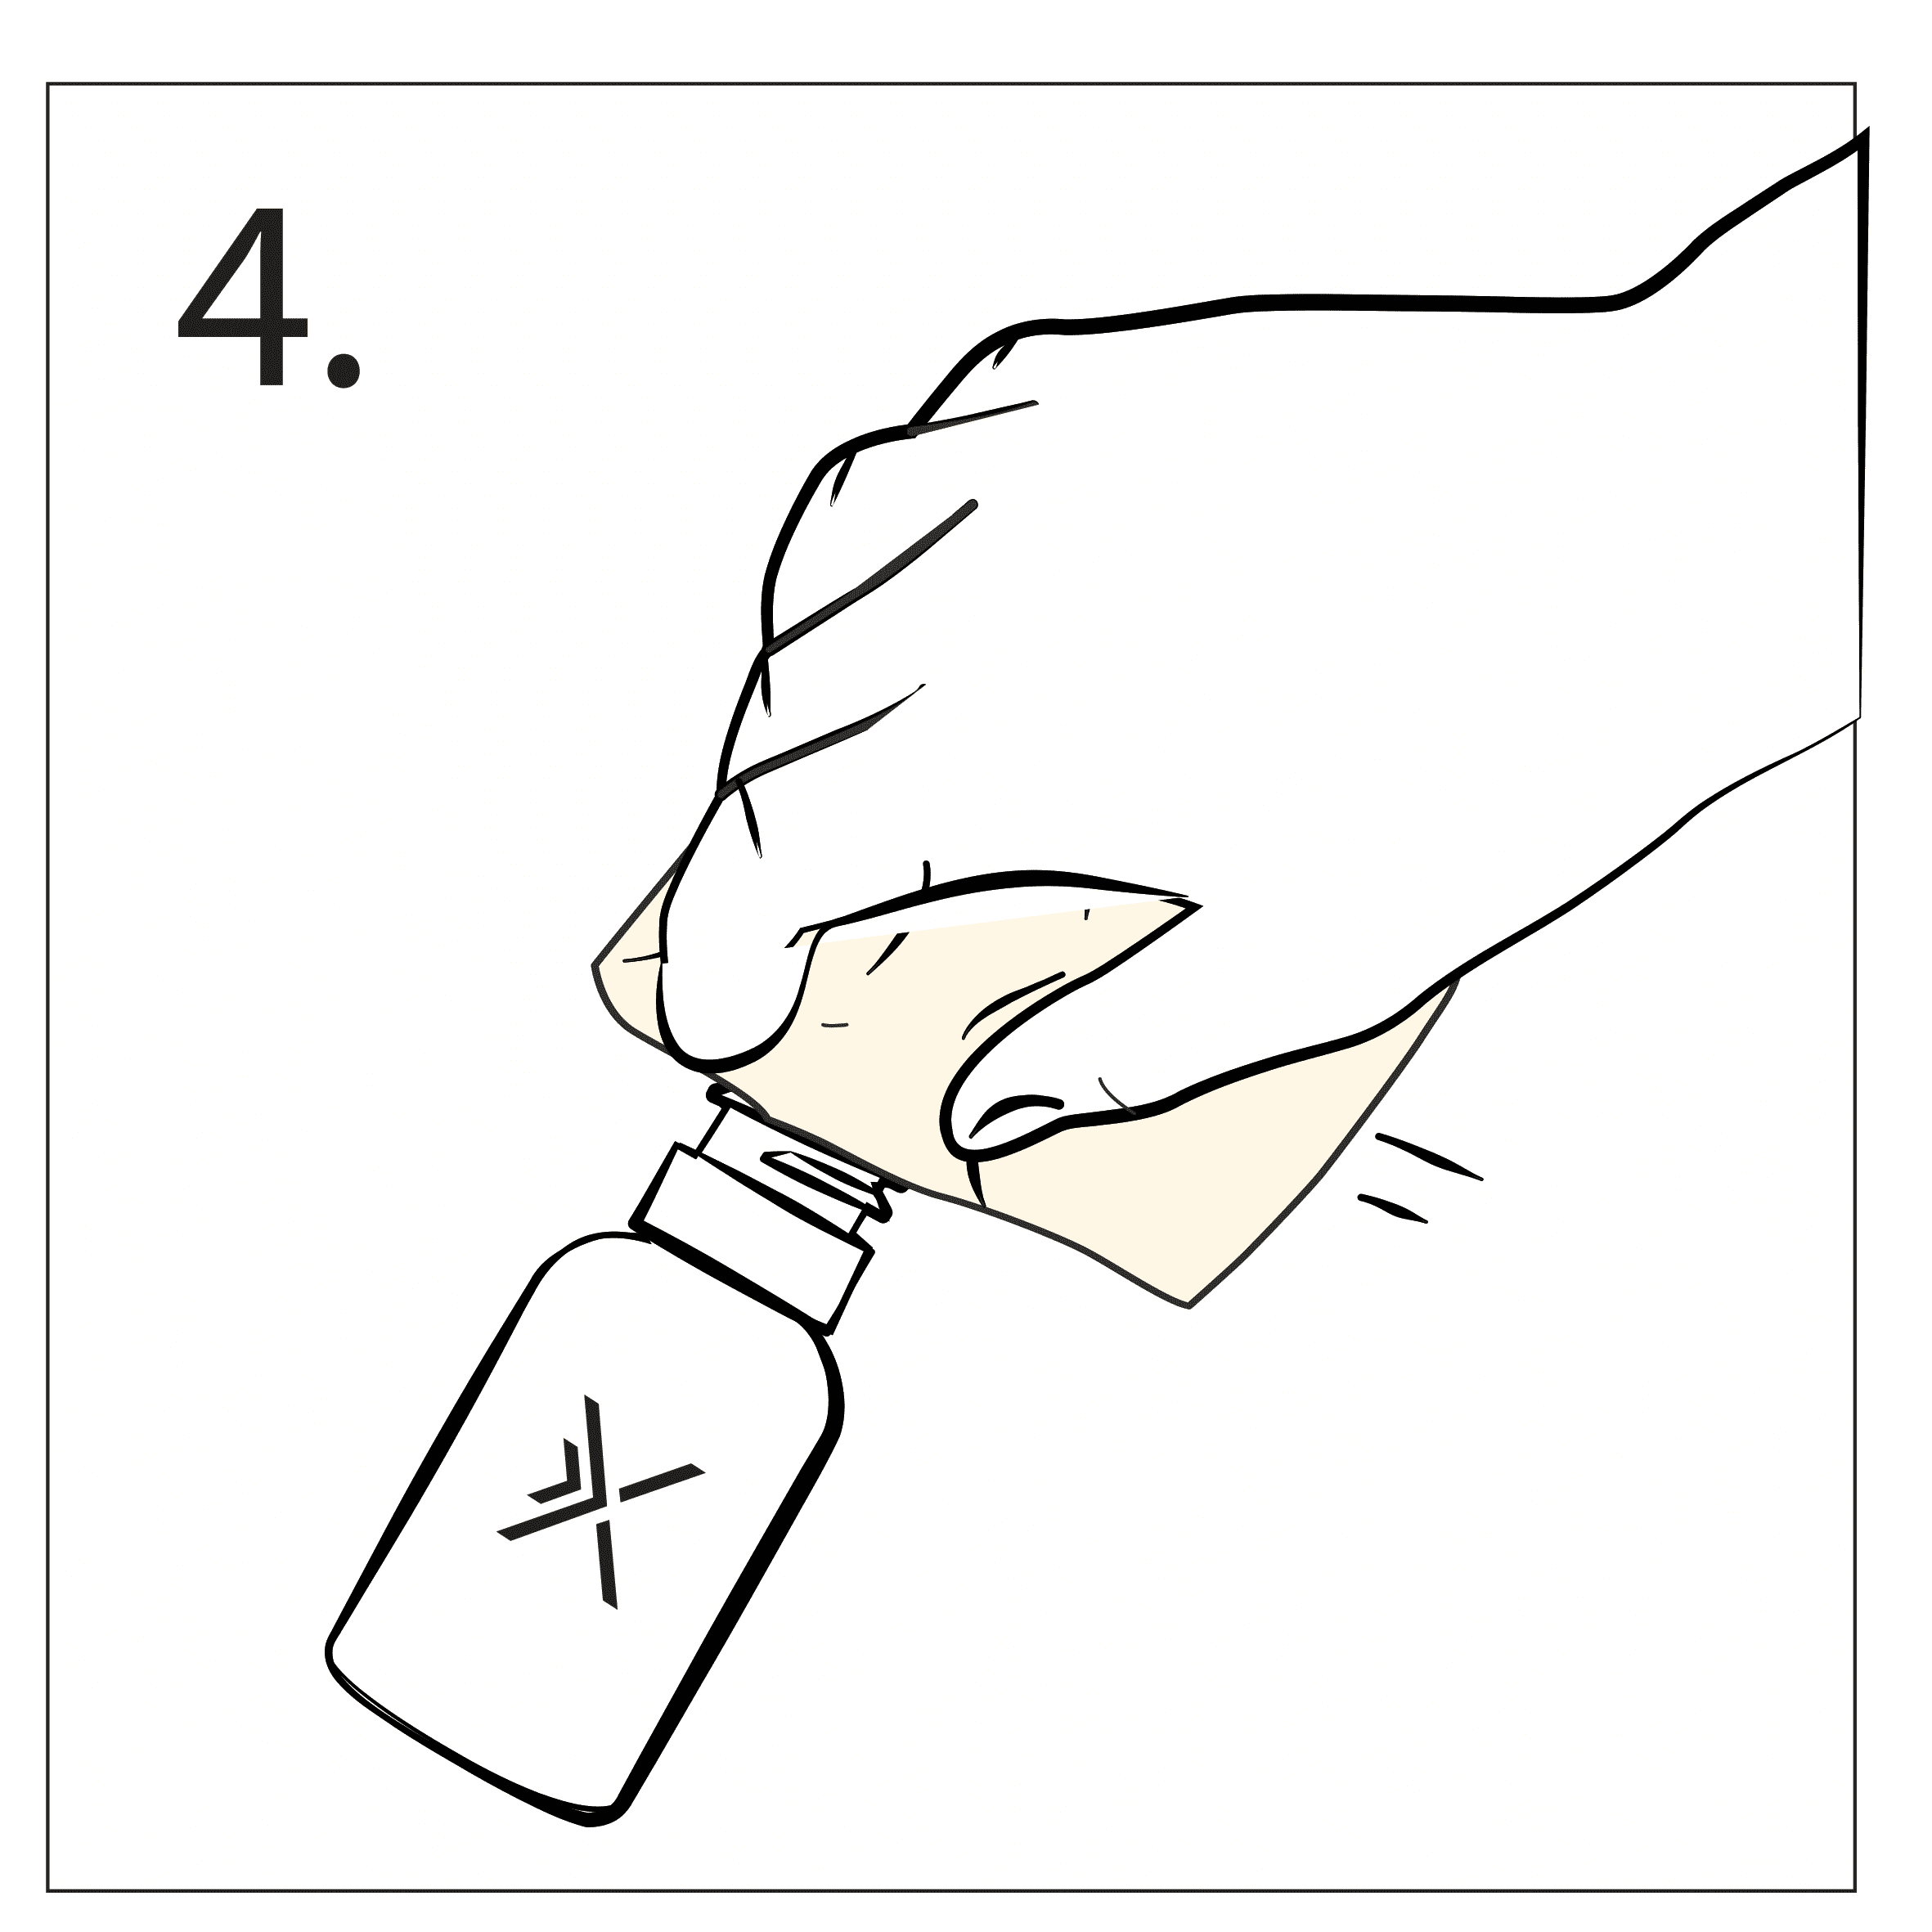 Wischen Sie die Taffix Flasche mit einem sauberen Handtuch ab